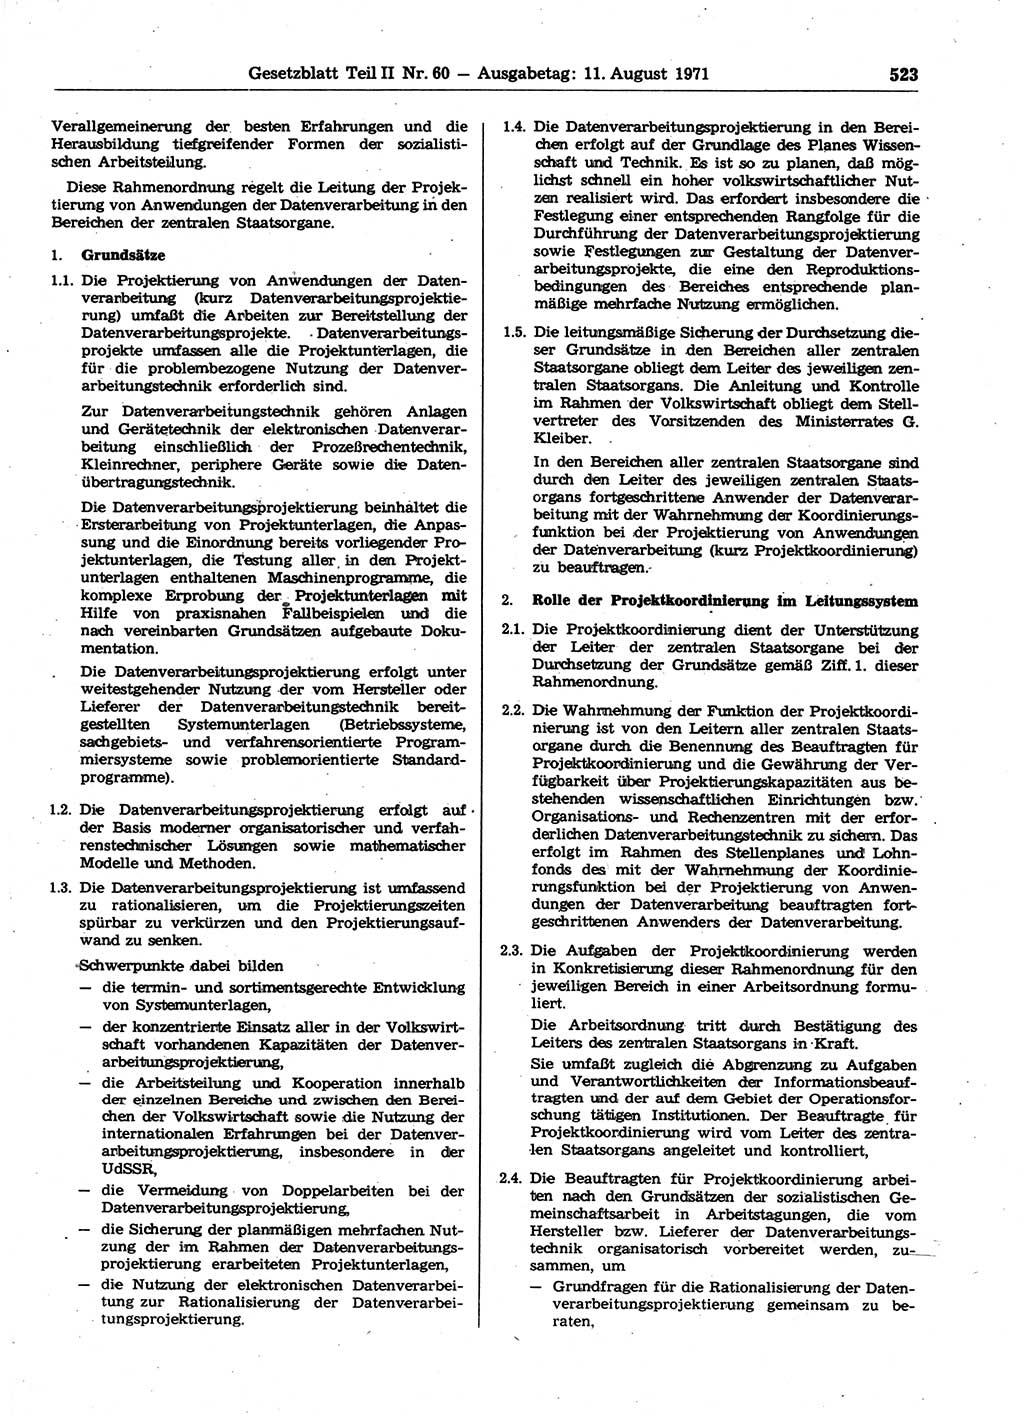 Gesetzblatt (GBl.) der Deutschen Demokratischen Republik (DDR) Teil ⅠⅠ 1971, Seite 523 (GBl. DDR ⅠⅠ 1971, S. 523)